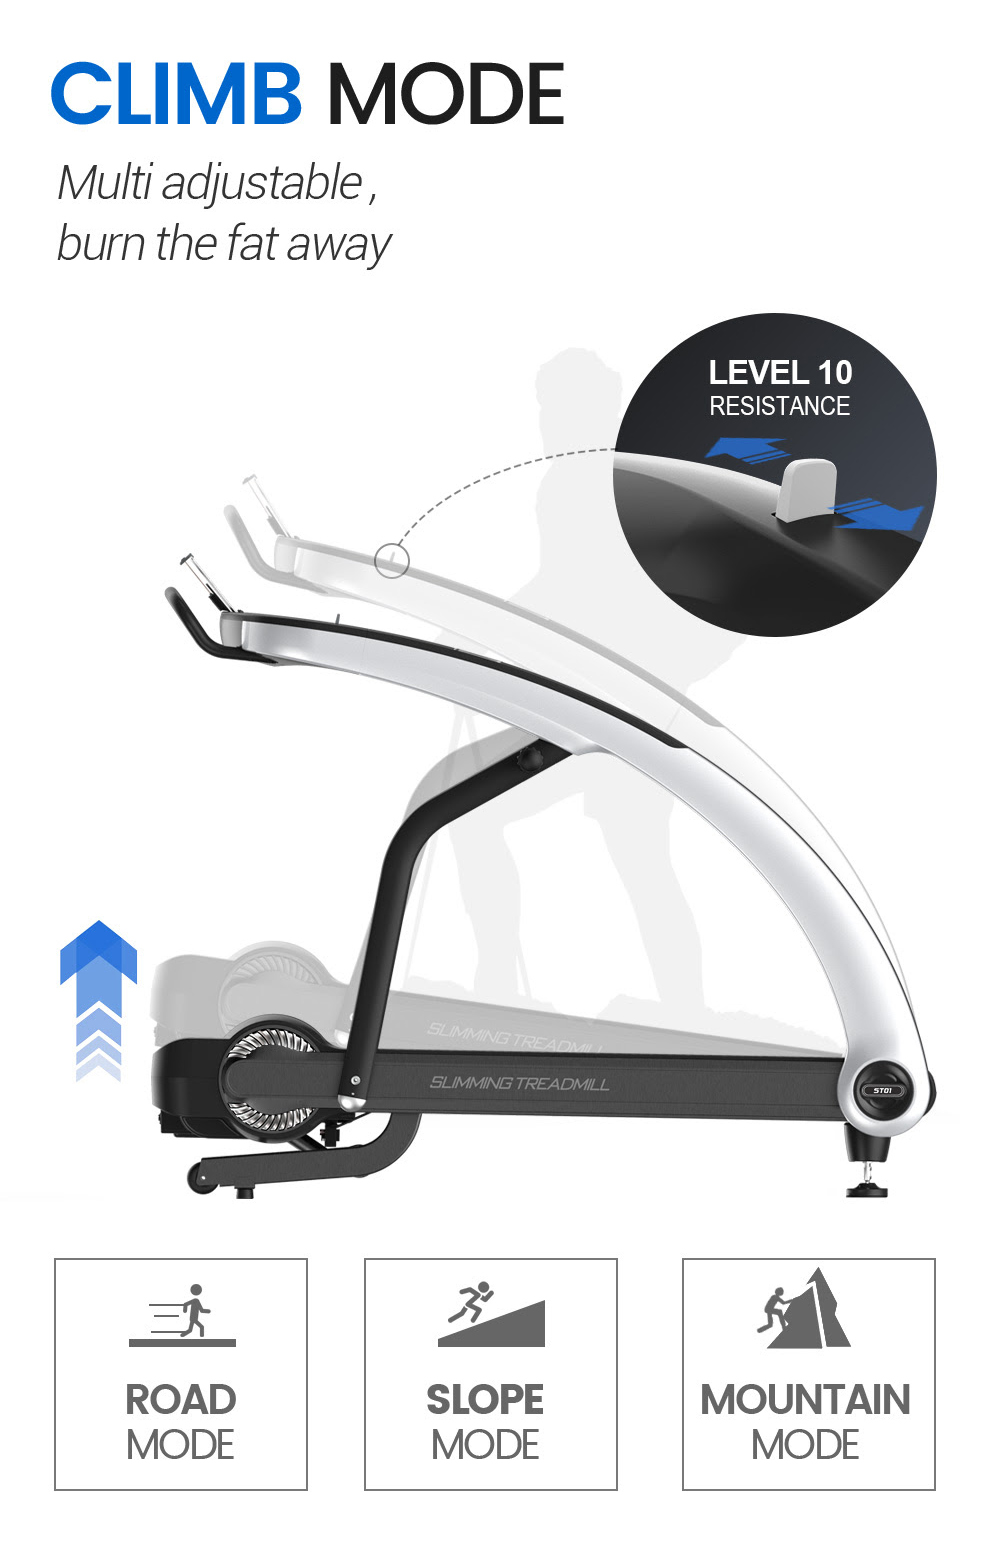 The MBF Fitness ST01A Treadmill - Climb Mode